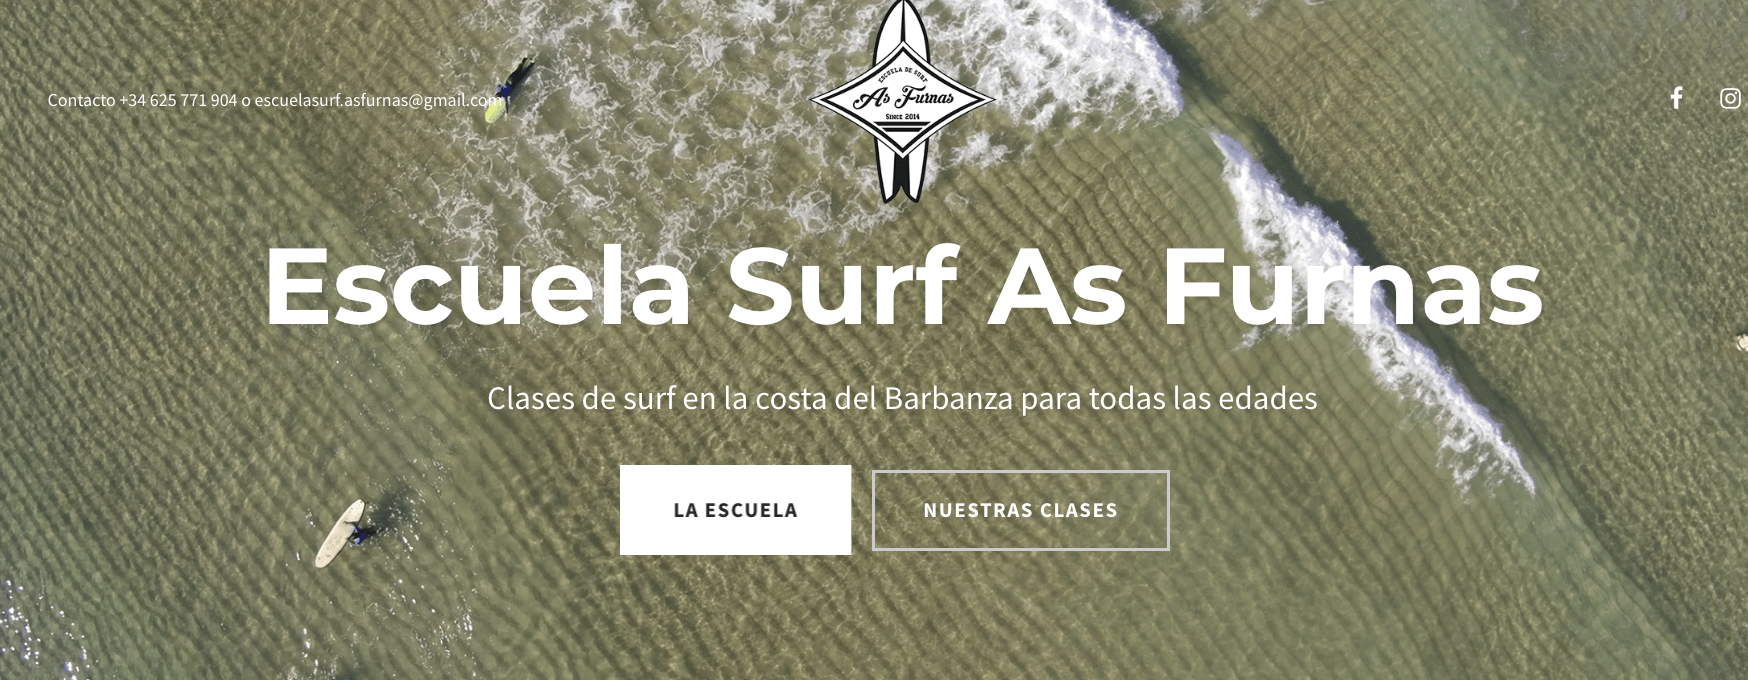 escuelas de surf en Galicia as furnas rio sieira porto do son